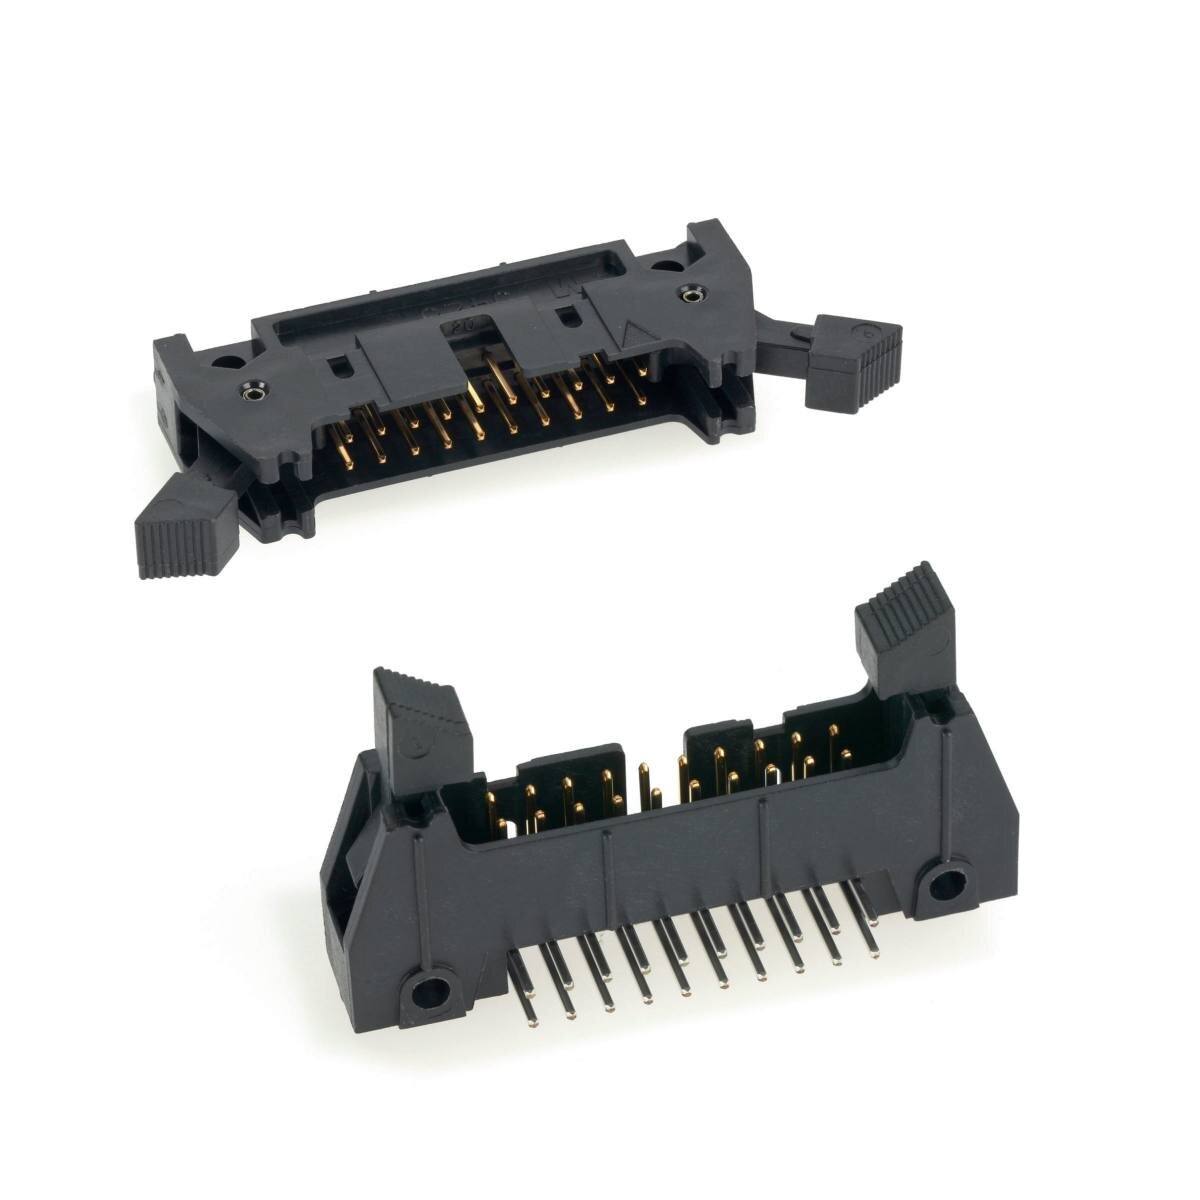 3M 3421-6600, Buchsenstecker für Kabelmontage, 20-pol, 3000 Serie, 2,45 mm, 0,76 µm Au, Grau